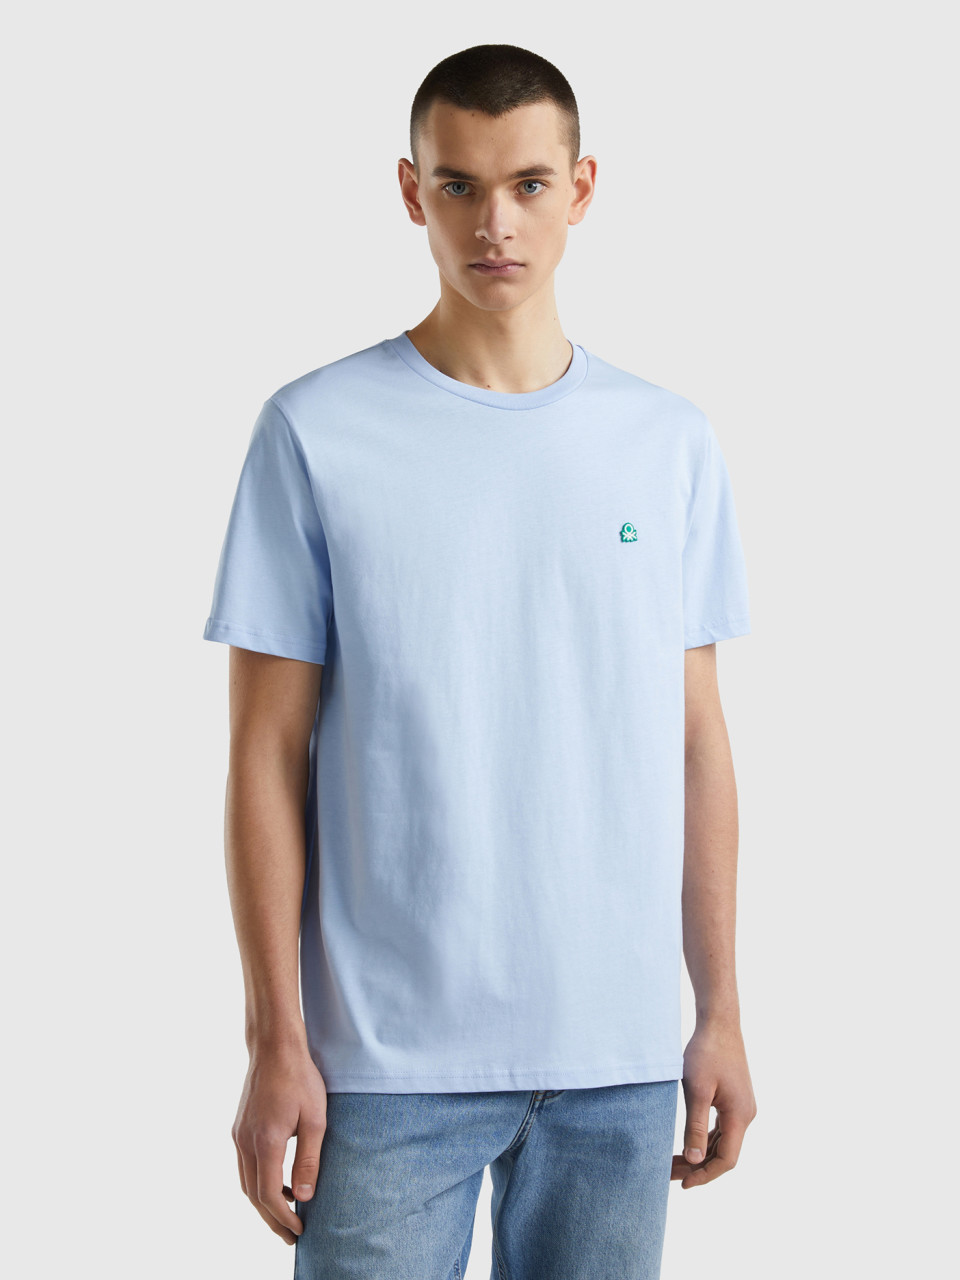 Benetton, T-shirt Basica 100% Cotone Bio, Celeste, Uomo